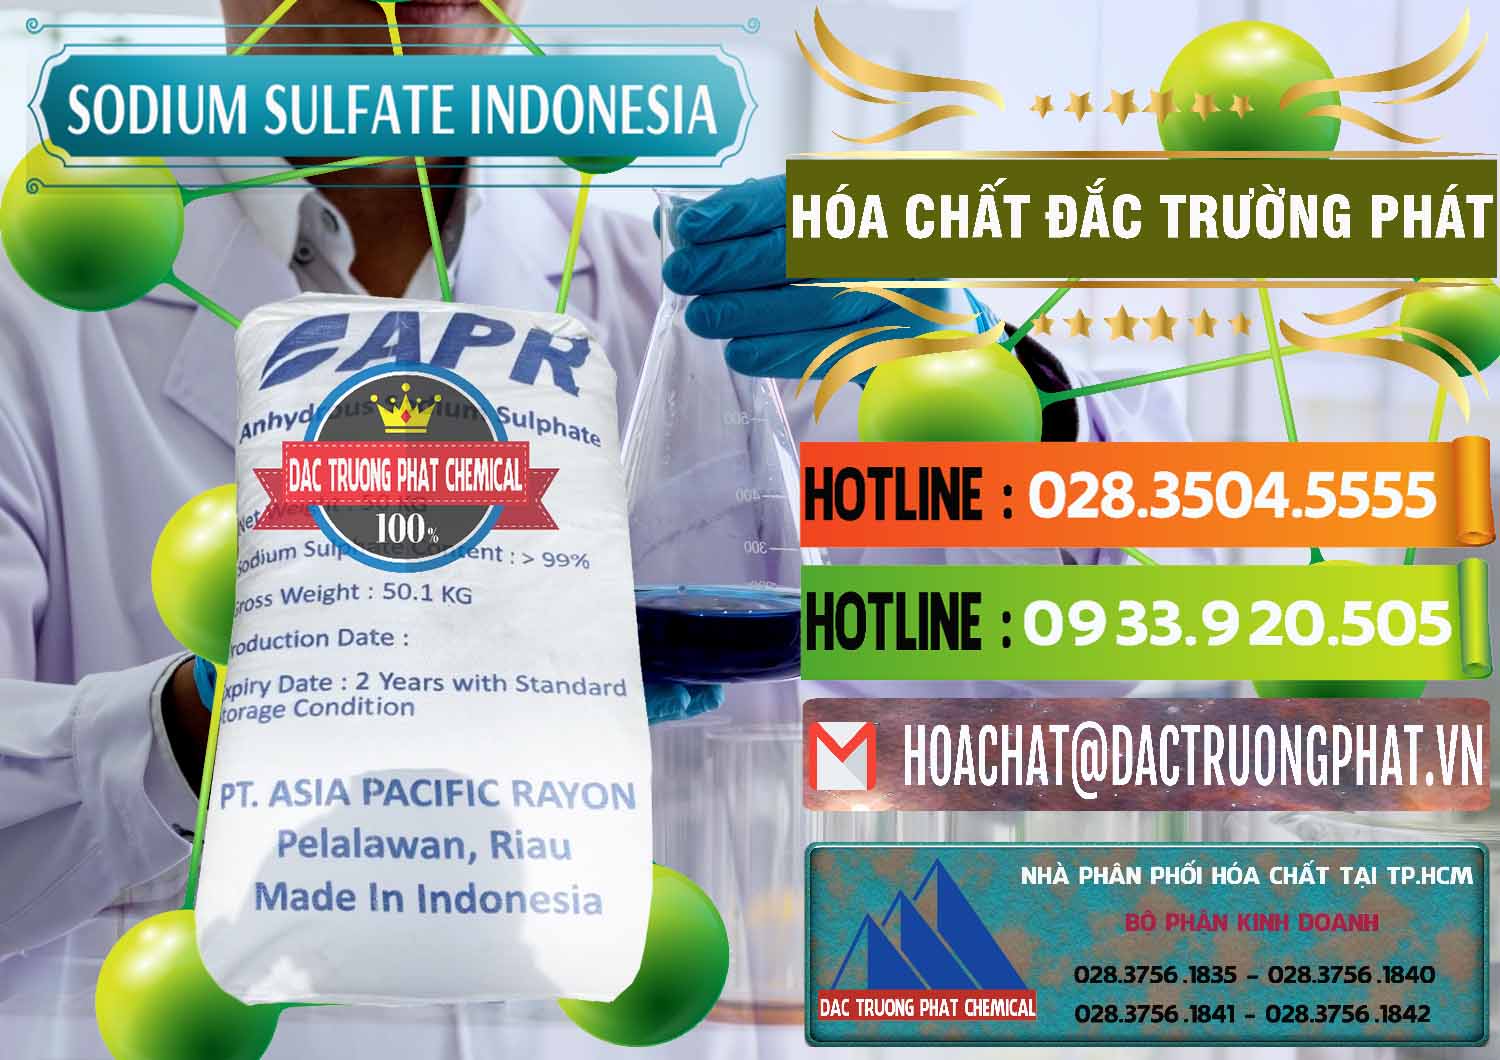 Nơi chuyên kinh doanh - bán Sodium Sulphate - Muối Sunfat Na2SO4 APR Indonesia - 0460 - Đơn vị chuyên phân phối và bán hóa chất tại TP.HCM - cungcaphoachat.com.vn